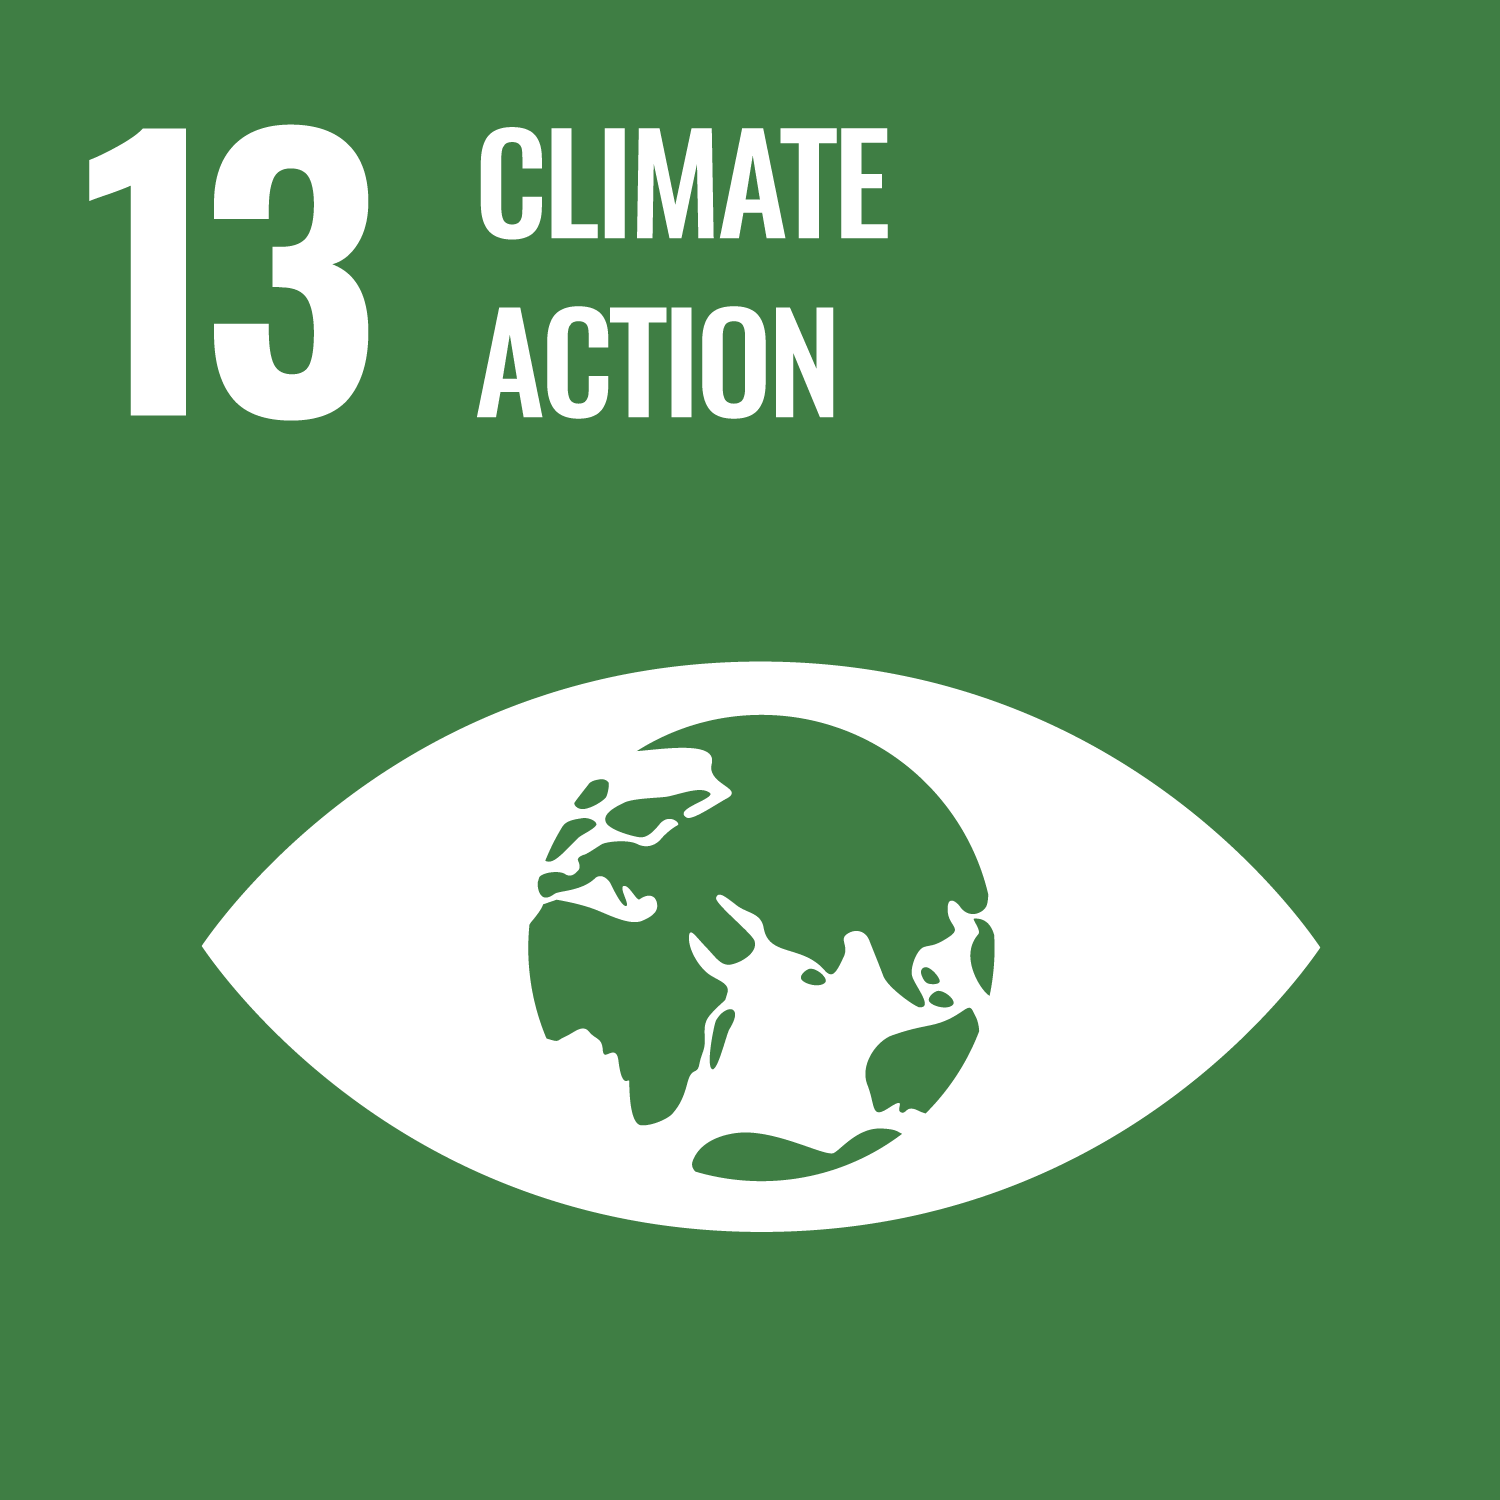 UN-Nachhaltigkeitsziel 13: Maßnahmen zum Klimaschutz